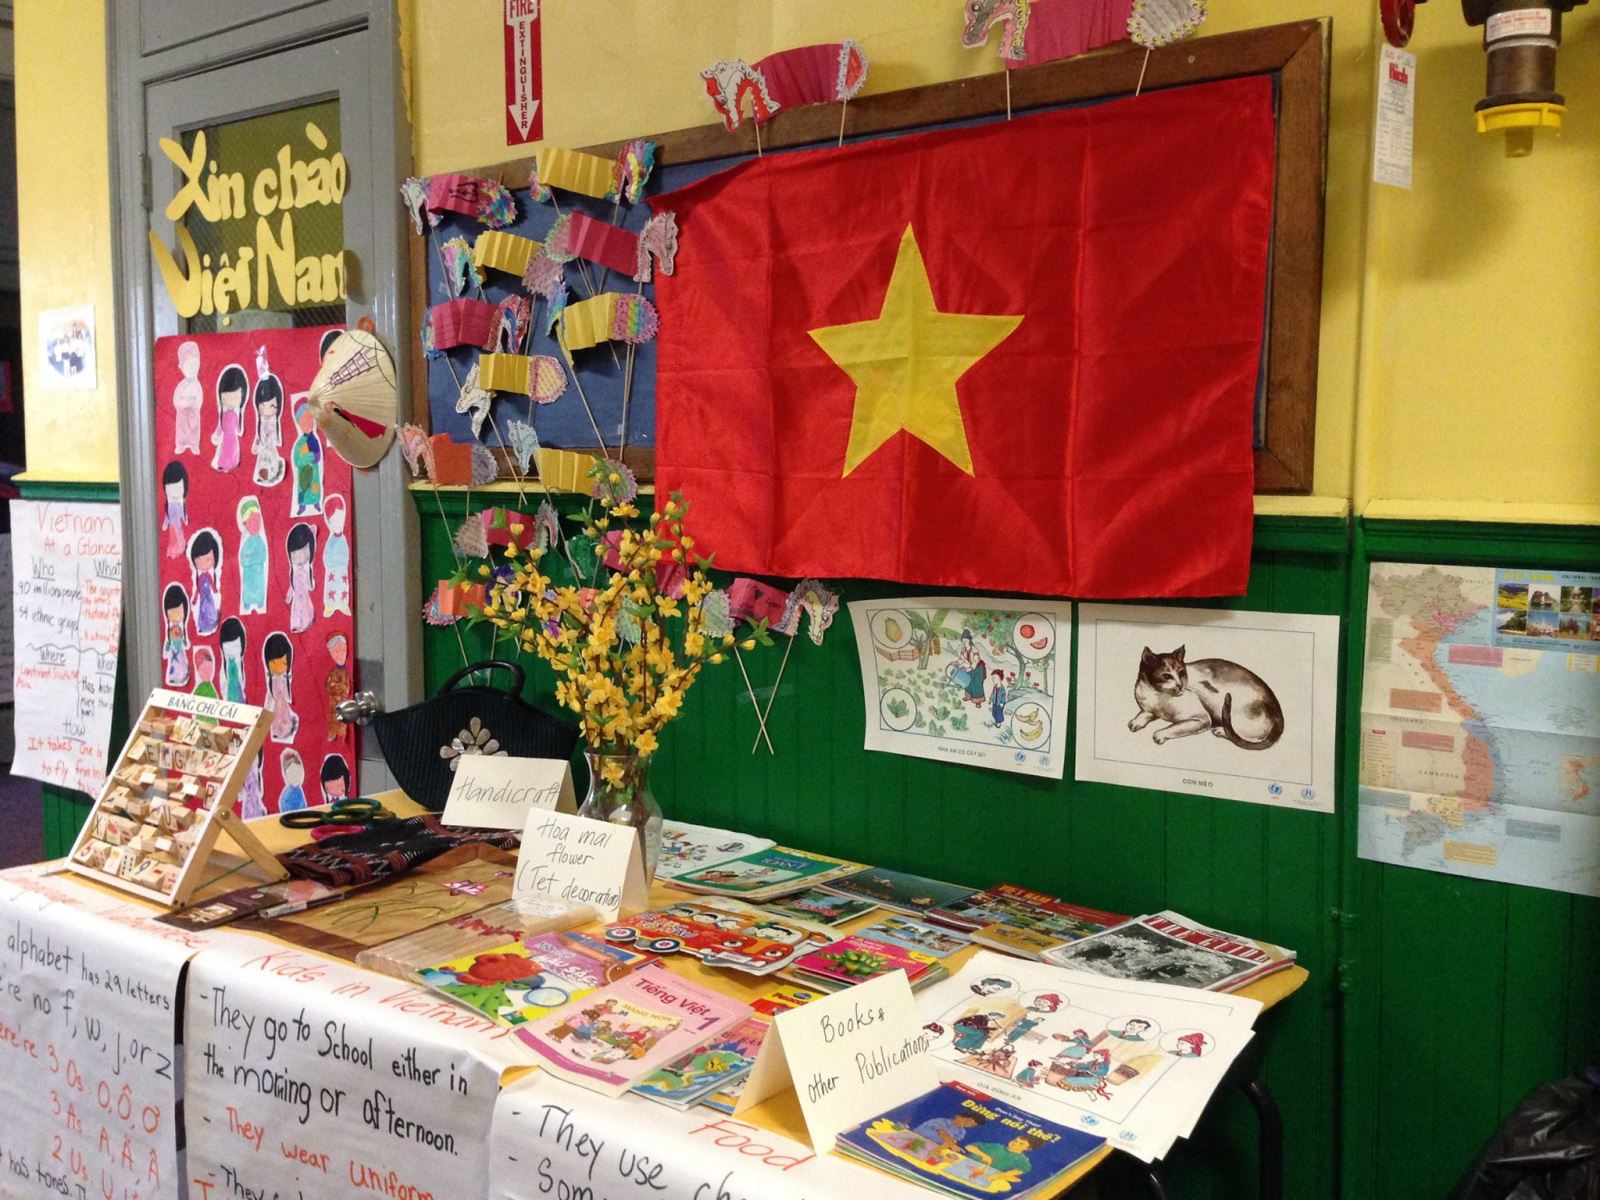 Góc giới thiệu về Việt Nam nhân một lễ hội ở trường của cô giáo Thu Hồng.